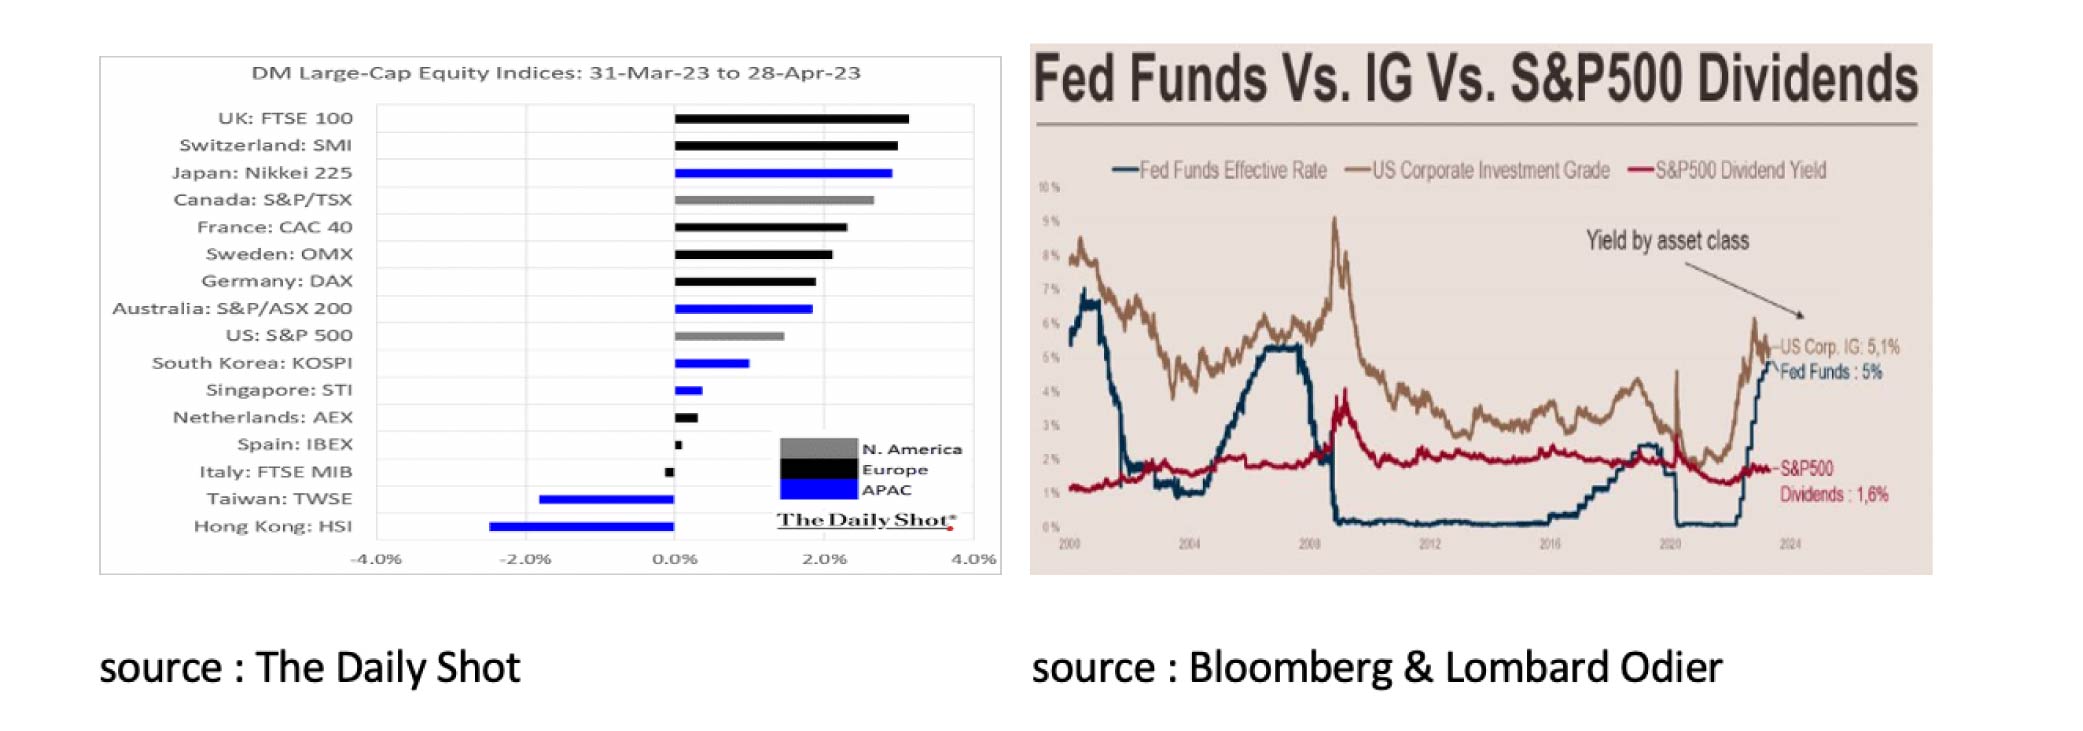 Fed Funds Vs. IG Vs. S&P500 Dividends